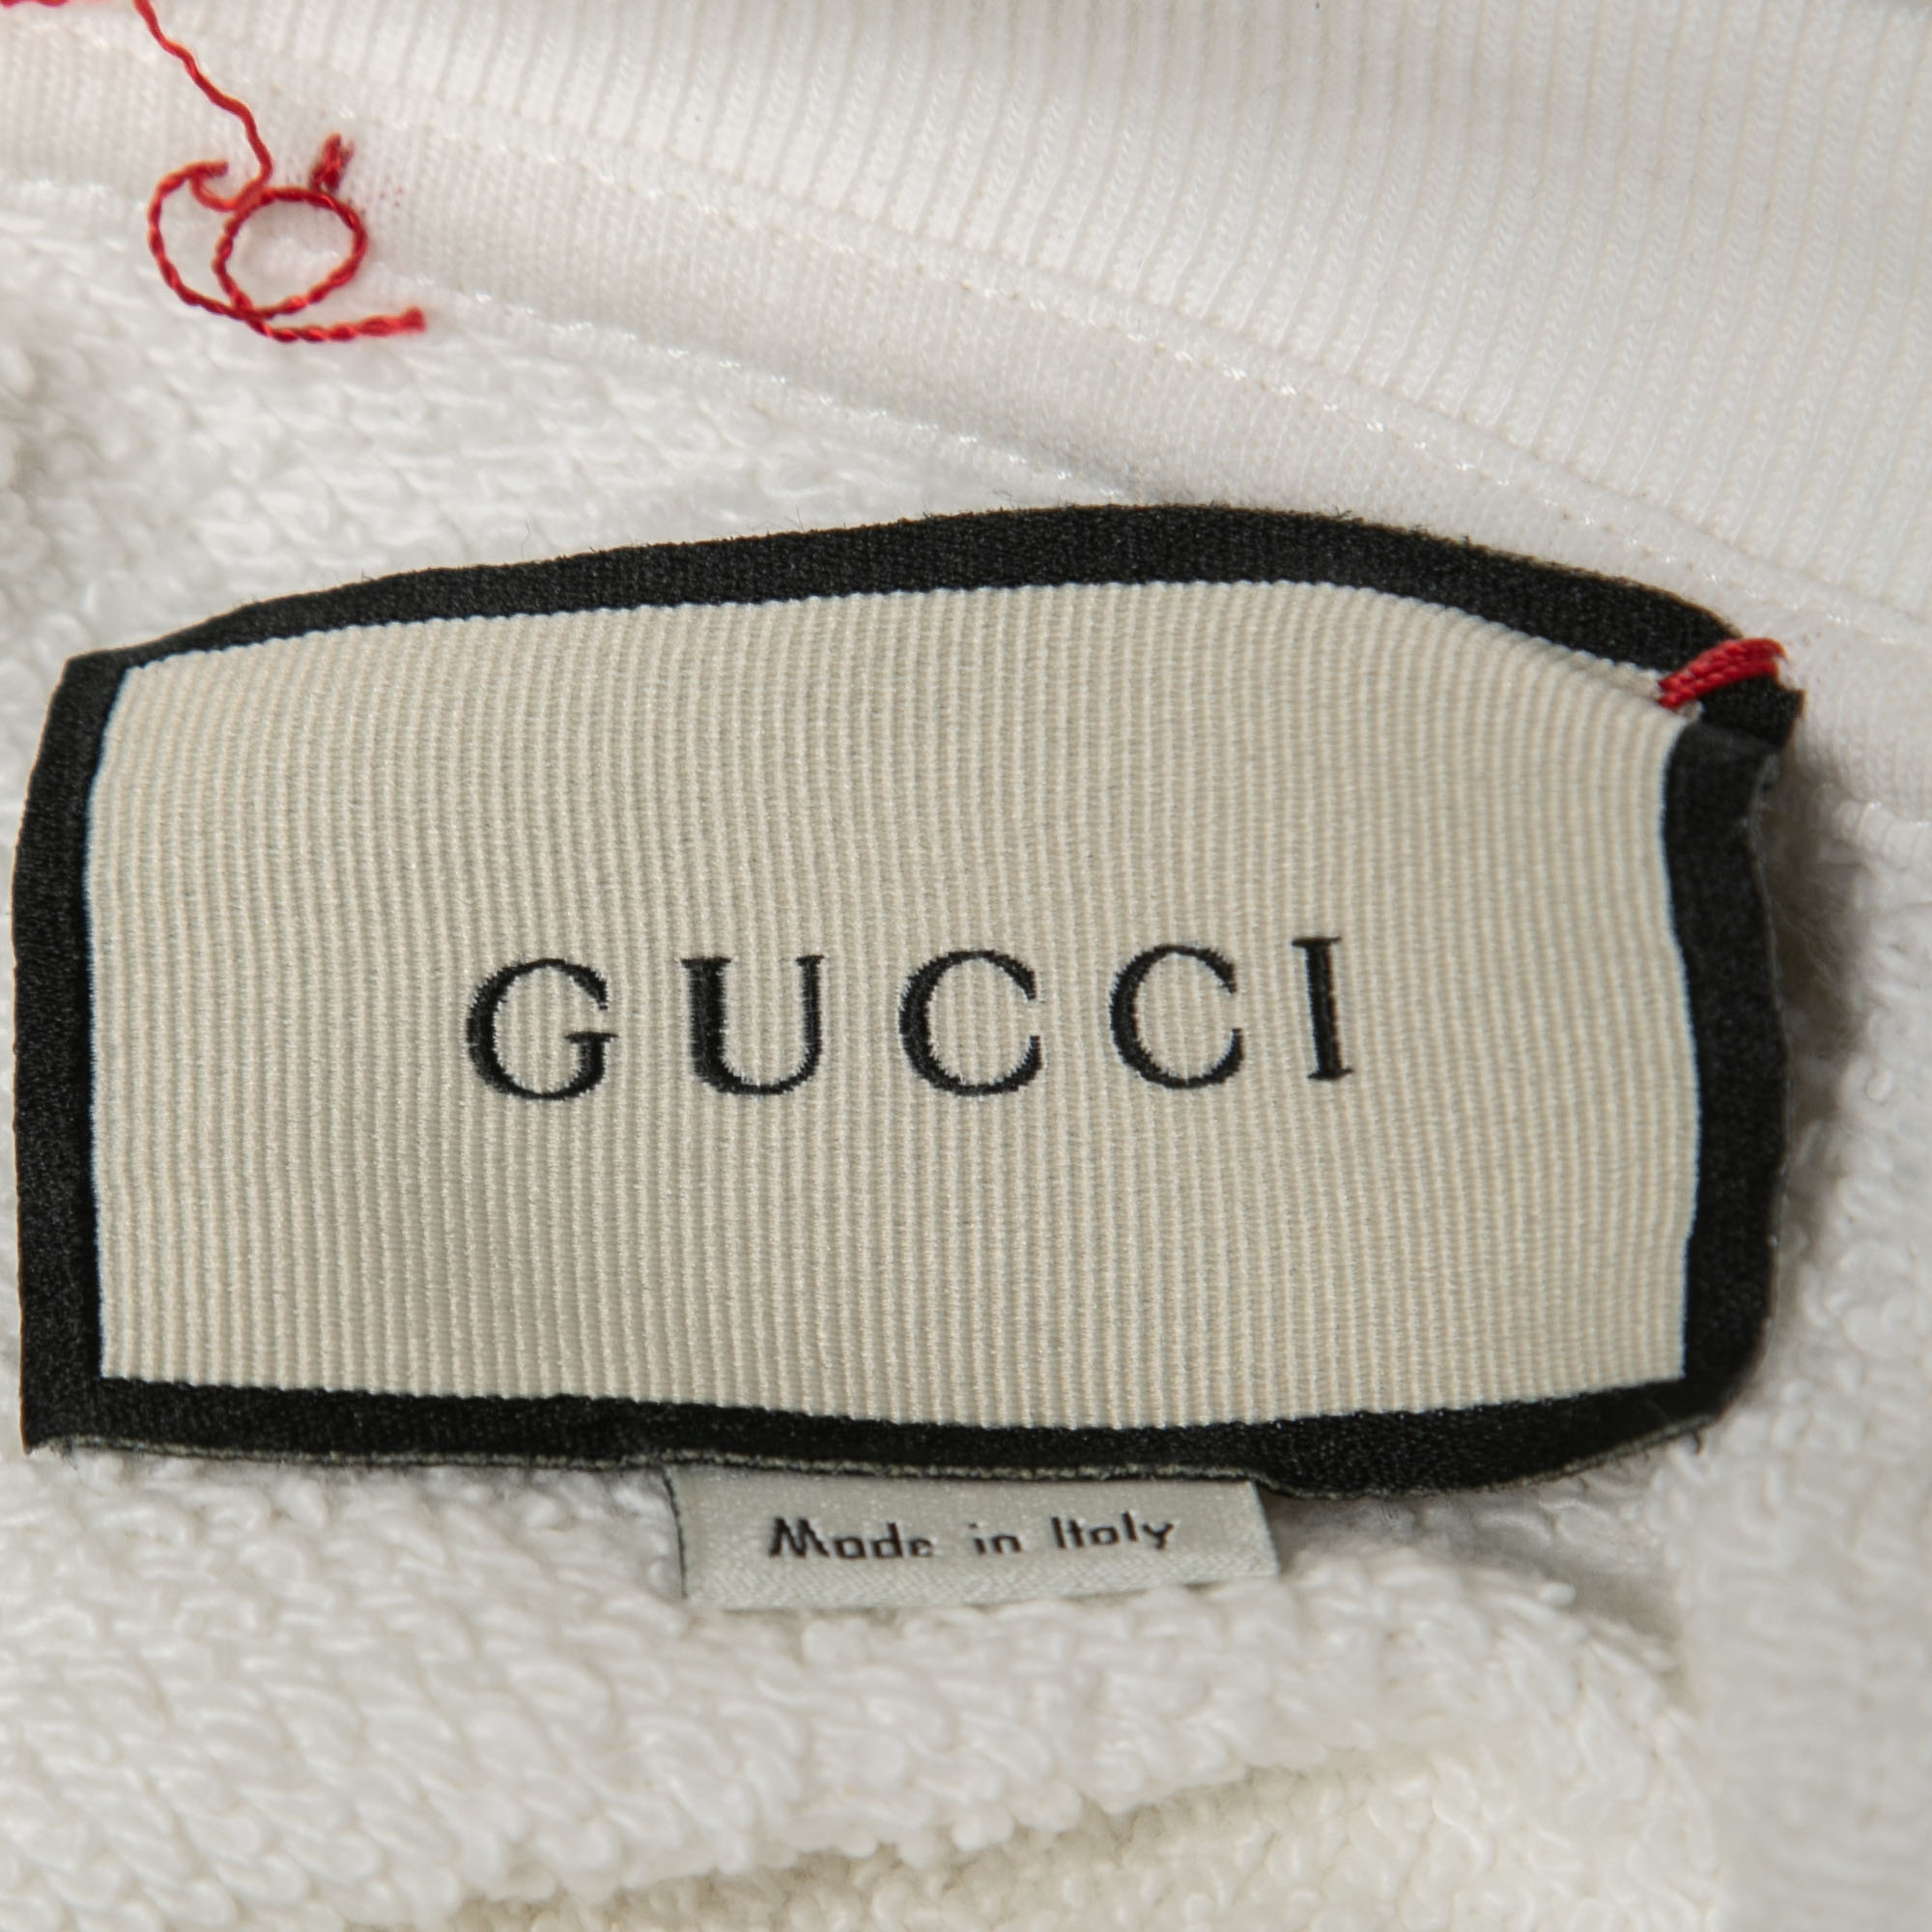 Gucci White Hawaii Glitter Print Cotton Knit Cropped T-Shirt XS